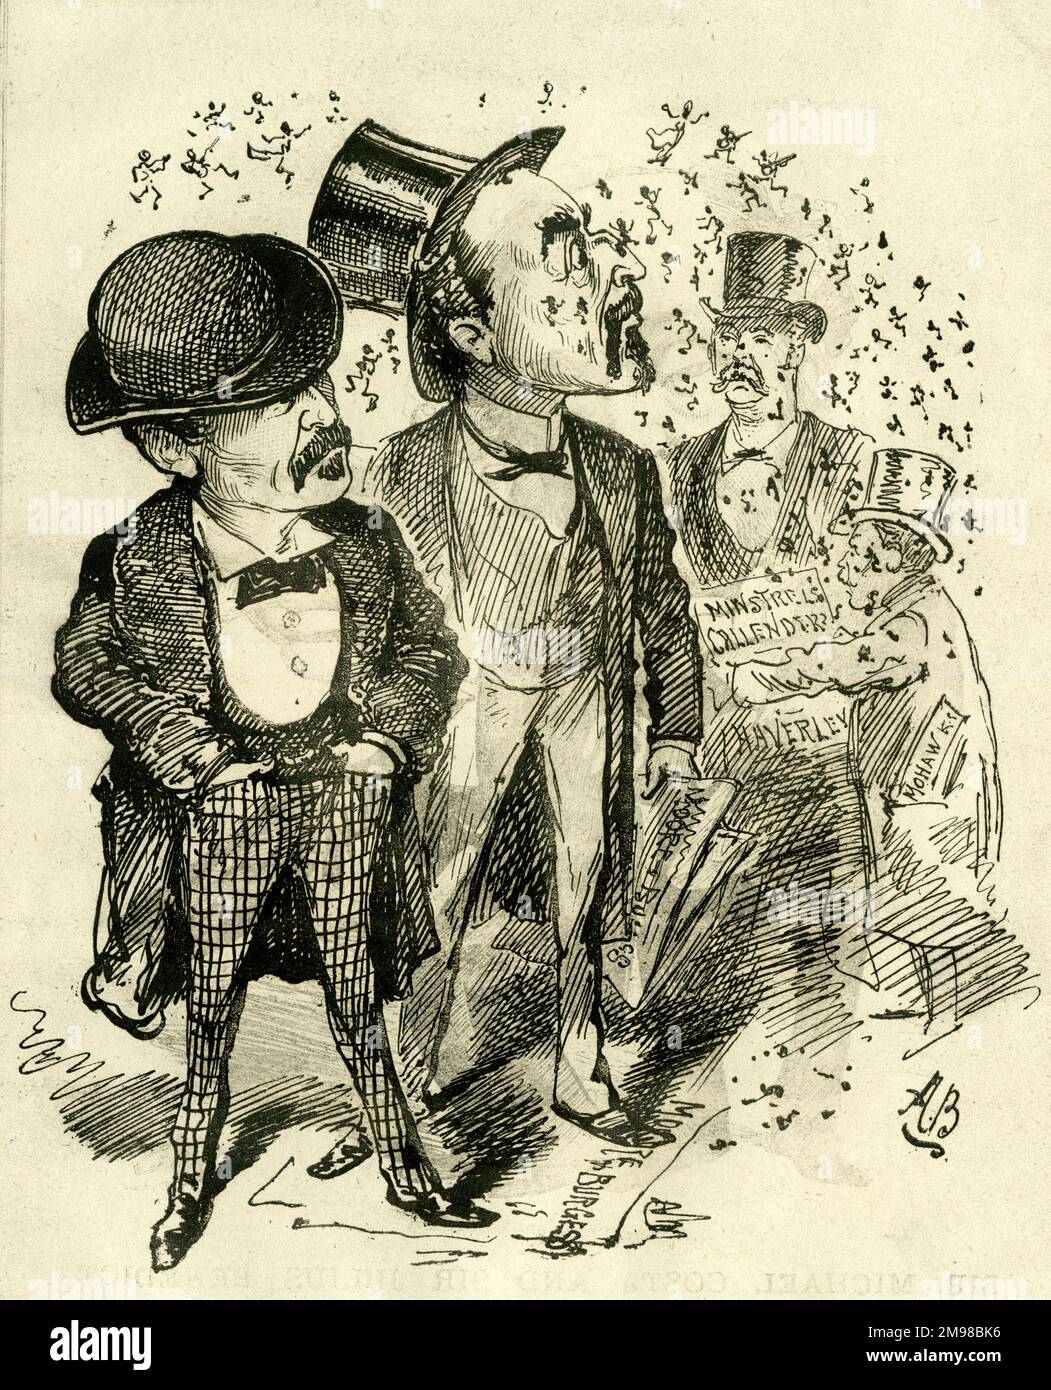 Cartoon, A Shower of Blacks – Haverley's Minstrels und Callender's Minstrels werden in Kürze in einigen Londoner Theatern (amerikanische Zeitung) erscheinen. Der Titel ist ein Wortspiel über die geschwärzten Gesichter der Minstrels und das viktorianische Wort für Rußpartikel, die in der Luft fliegen. Im Vordergrund stehen George Washington Moore (1820-1909) und Frederick Burgess, der 1871 das Moore und Burgess Minstrels gründete. Sie sind nicht sehr erfreut zu sehen, dass konkurrierende Entertainer ihre Show bewerben. Stockfoto